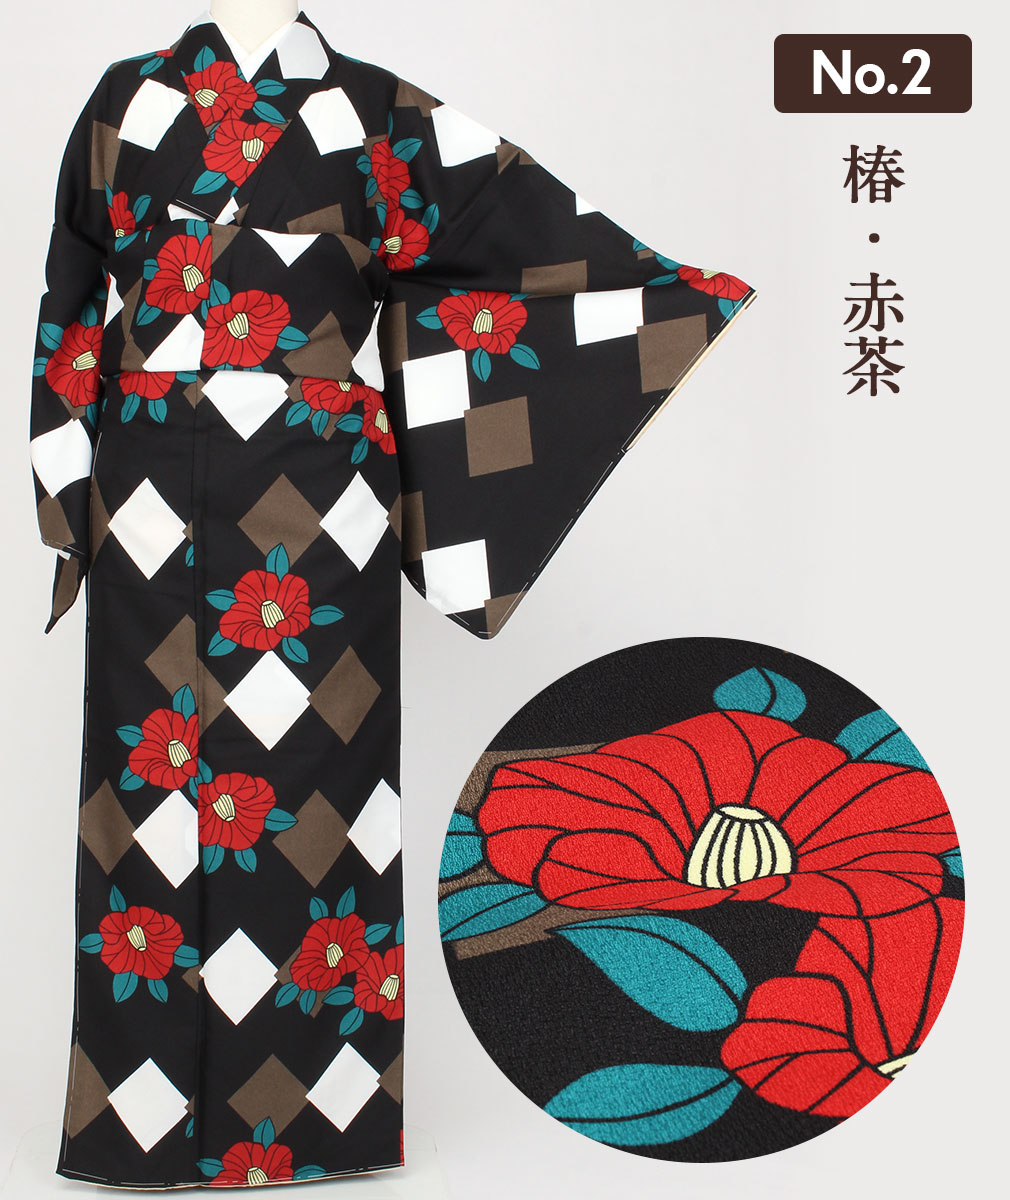  кимоно мелкий рисунок . начинающий все 15 рисунок M L размер ... кимоно ... израсходованный модный женщина 